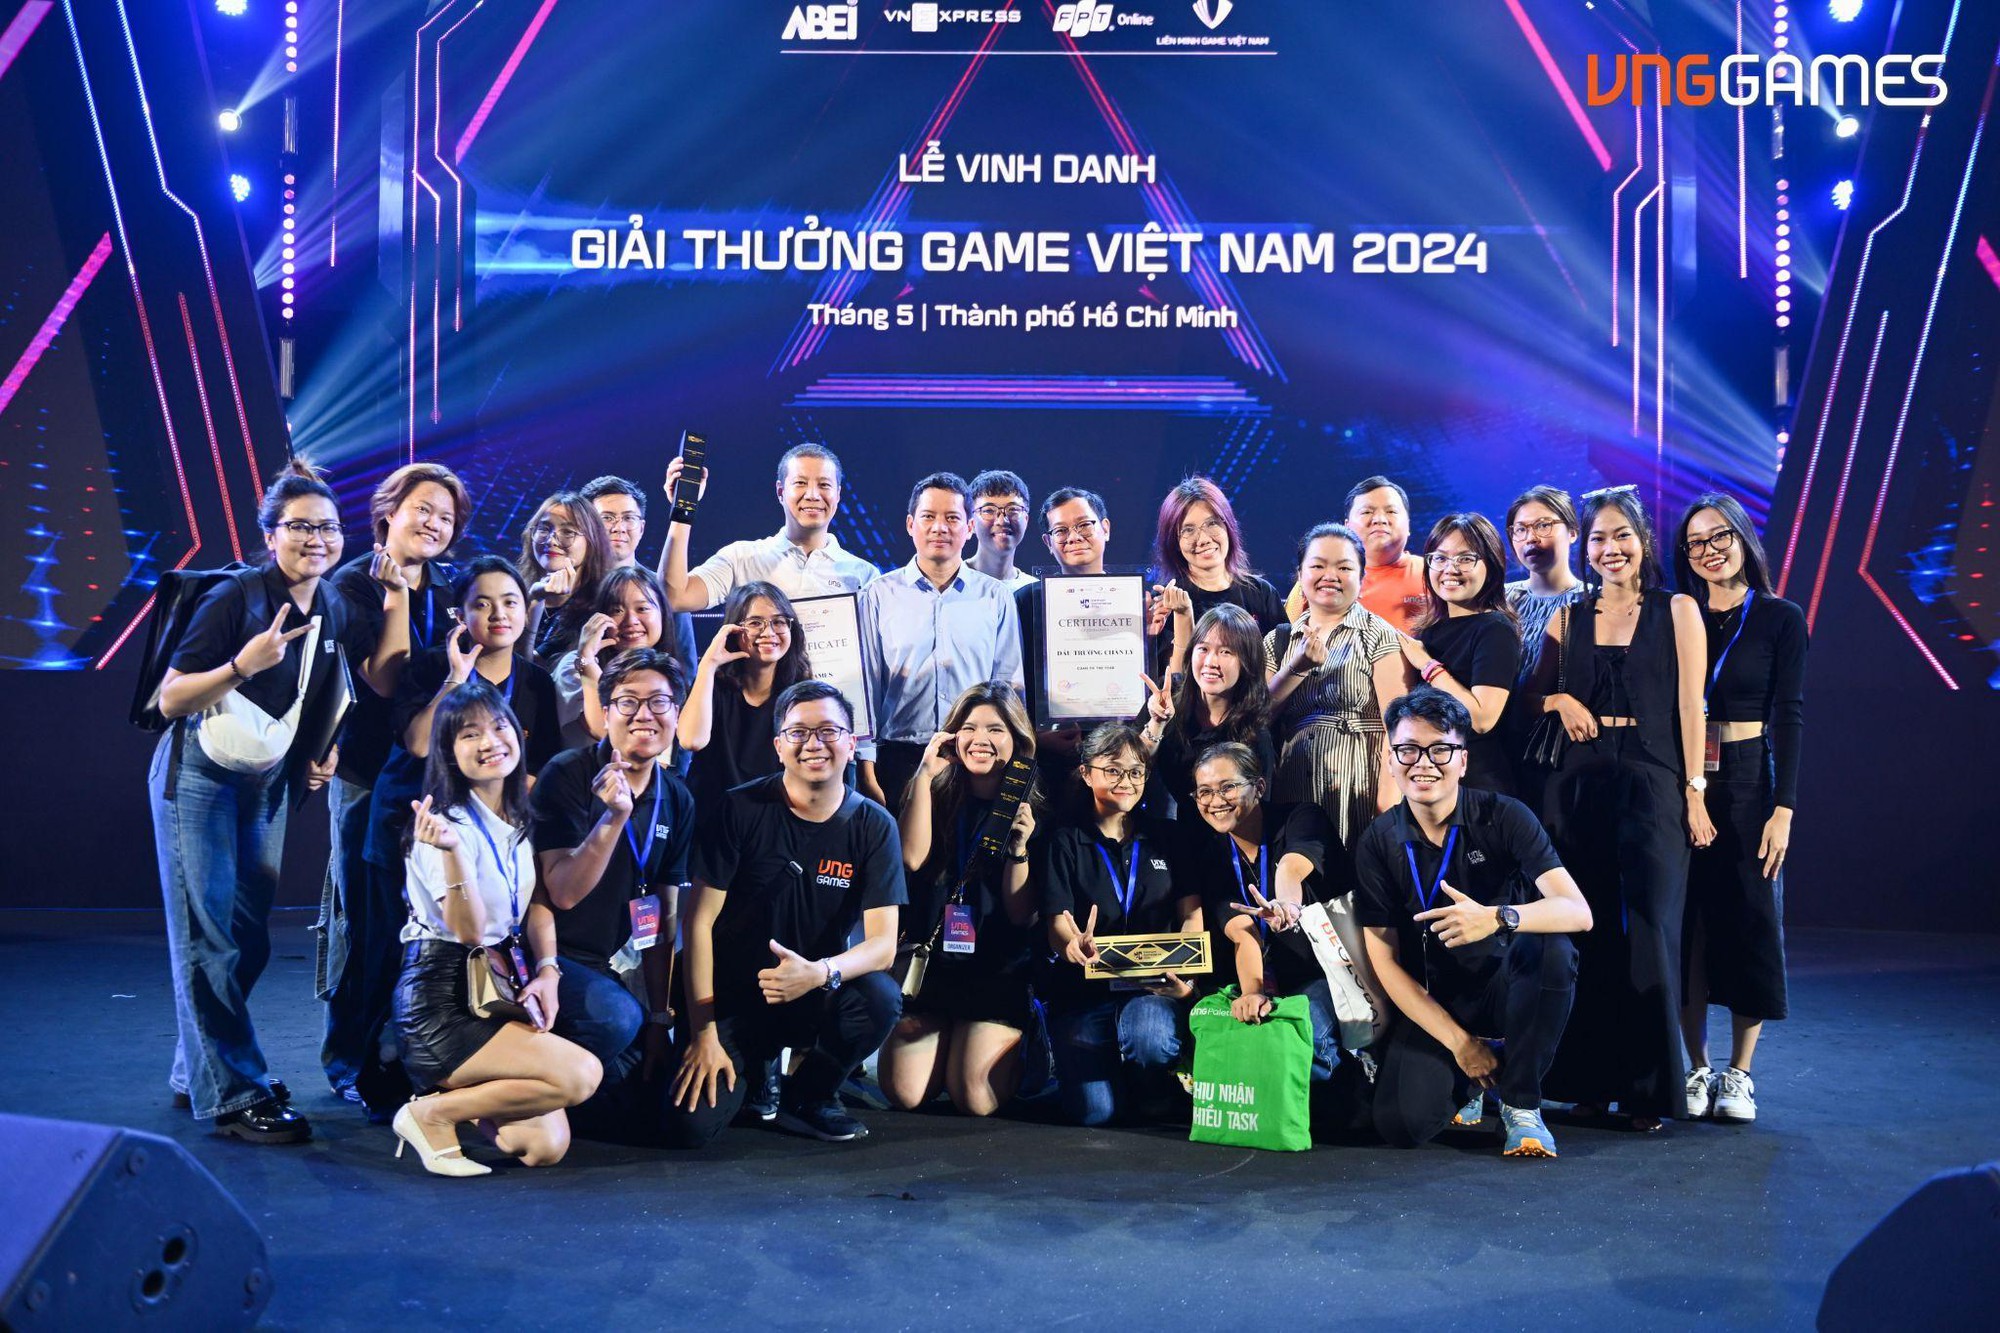 Giải thưởng Game 2024: VNG là nhà phát hành xuất sắc, VNPT là nhà mạng được vinh danh